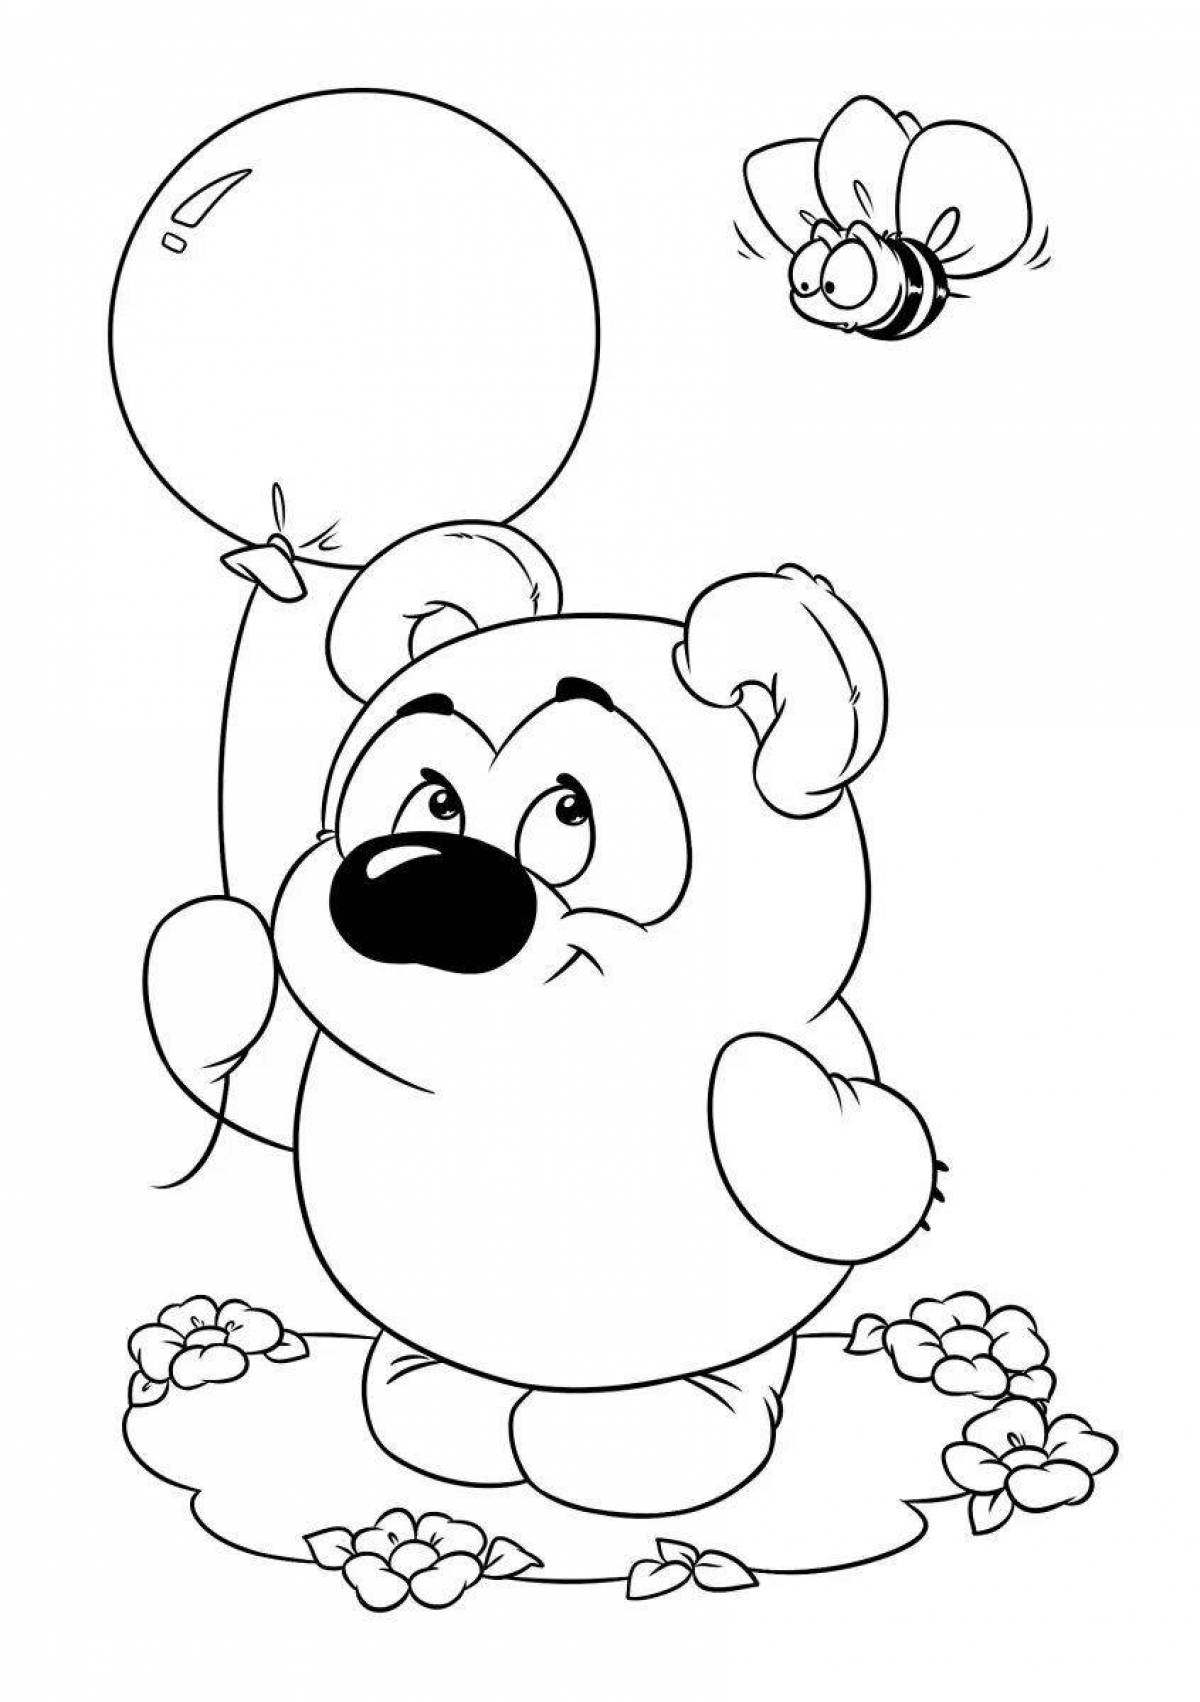 Анимационный винни-пух с воздушным шаром